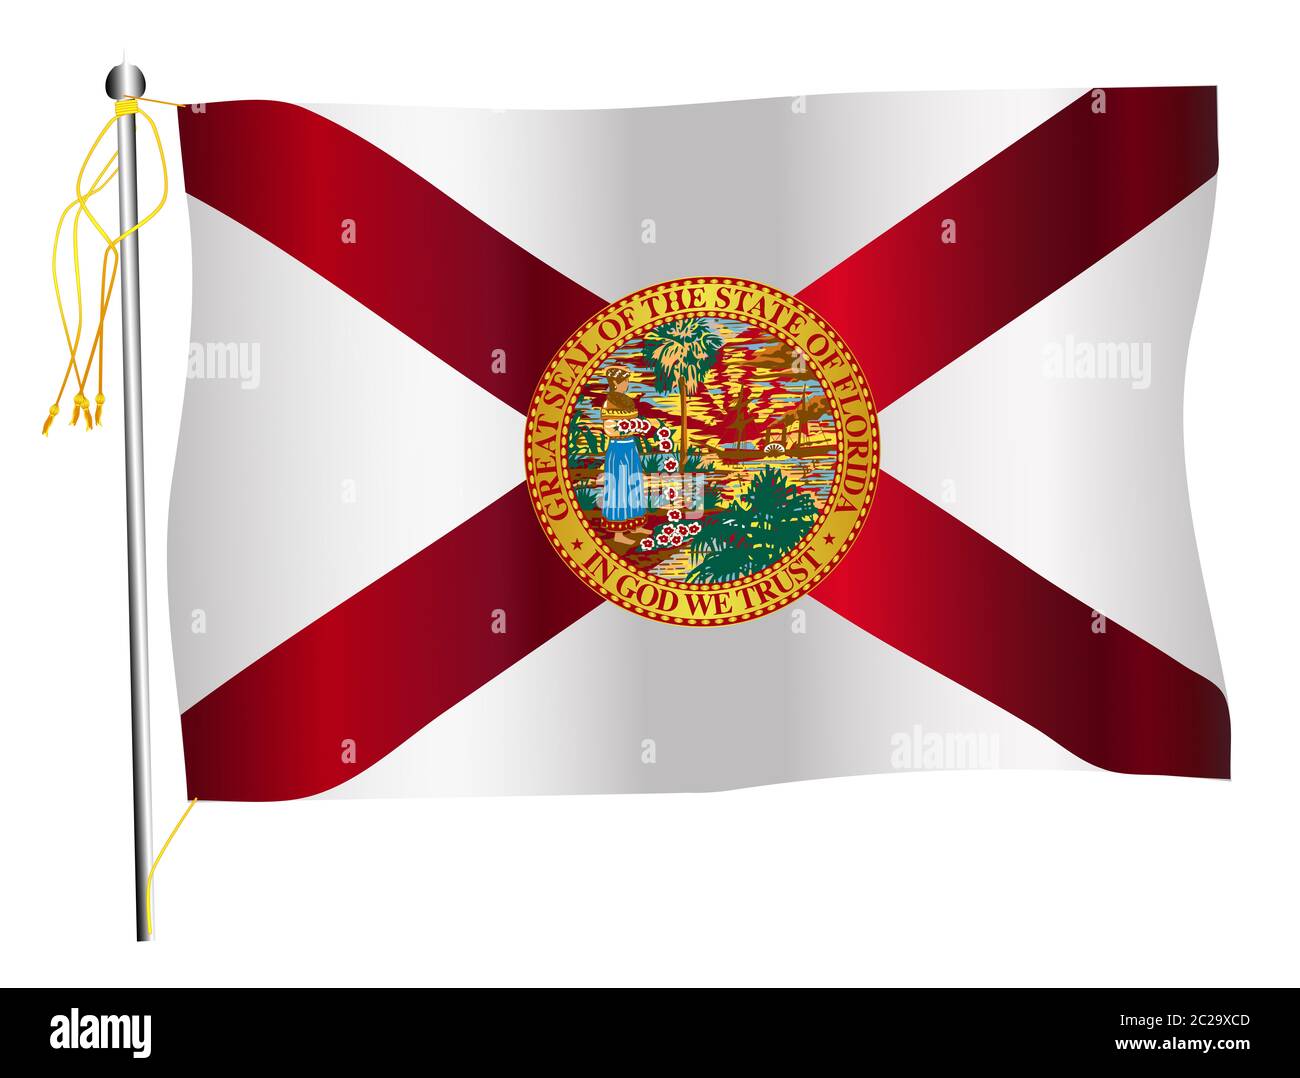 Der US-Staat Florida flatternden Fahne gegen gegen einen weißen Hintergrund. Stockfoto